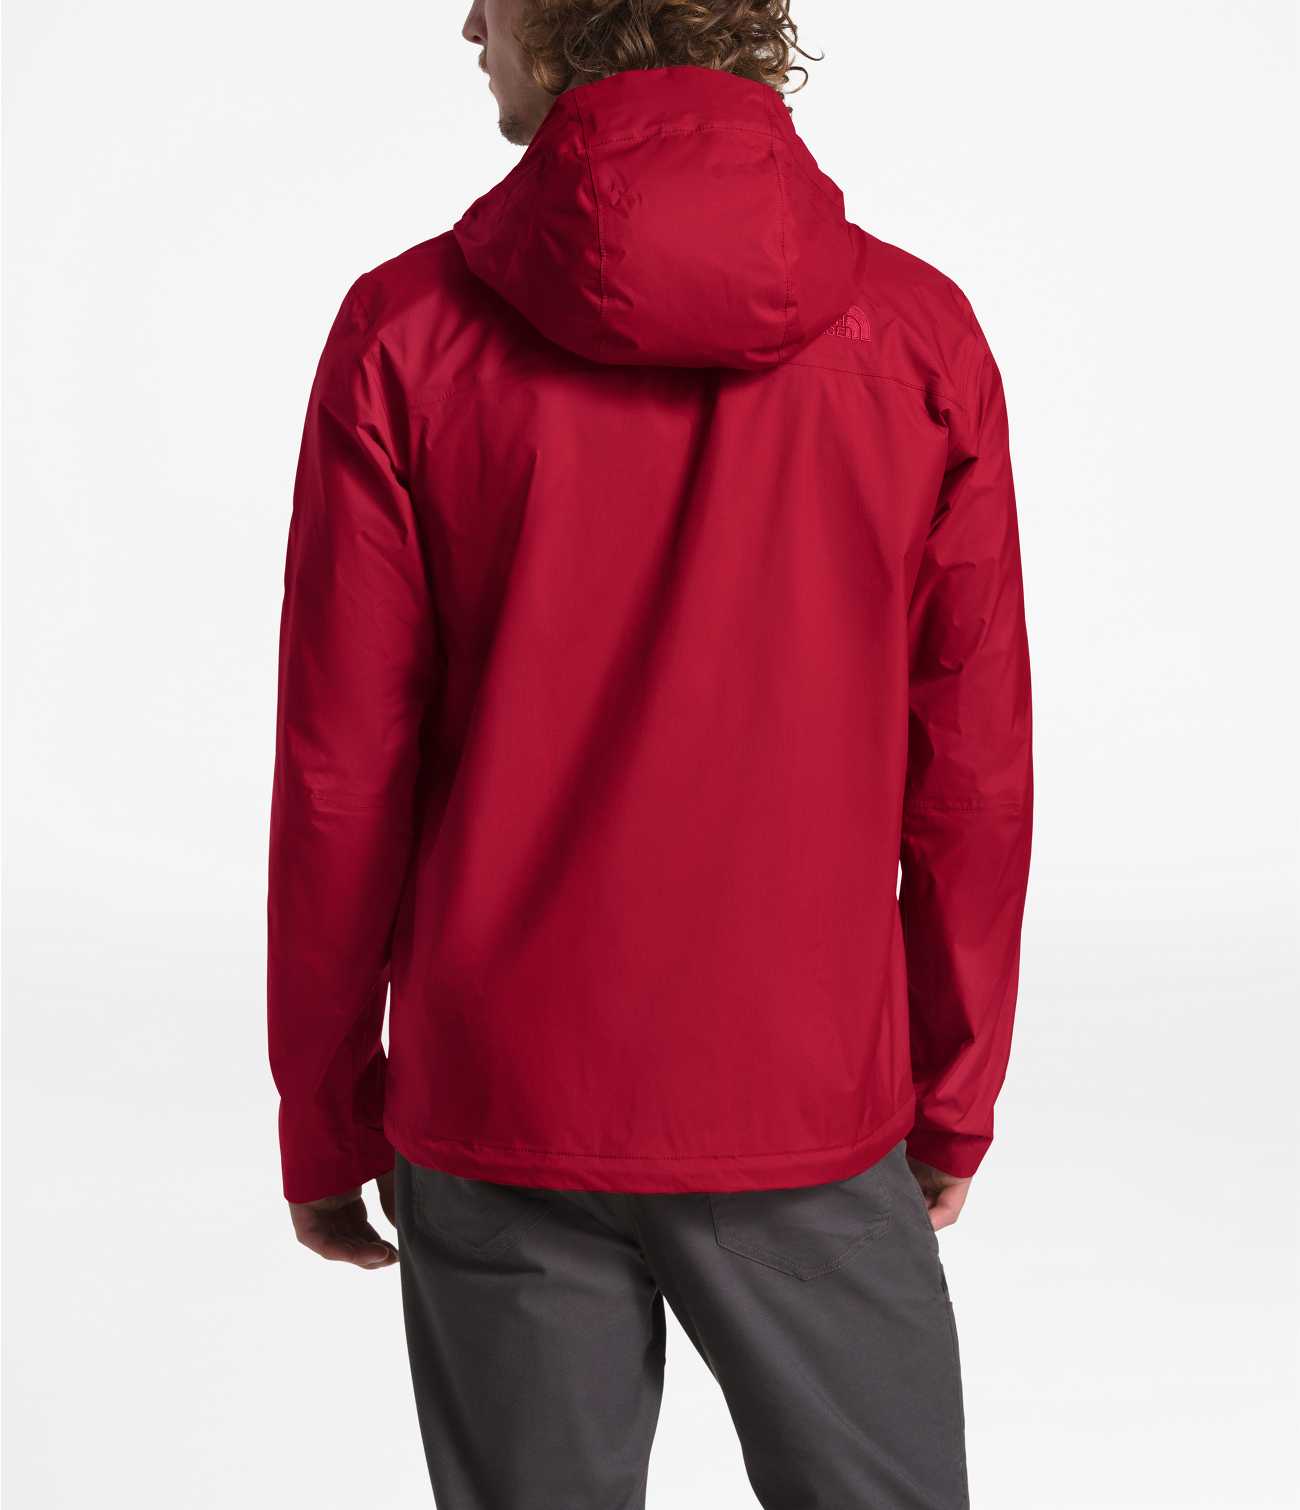 The North Face Men’s Venture 2 Waterproof Hooded Rain Jacket, Kelp  Tan/Utility Brown, Medium